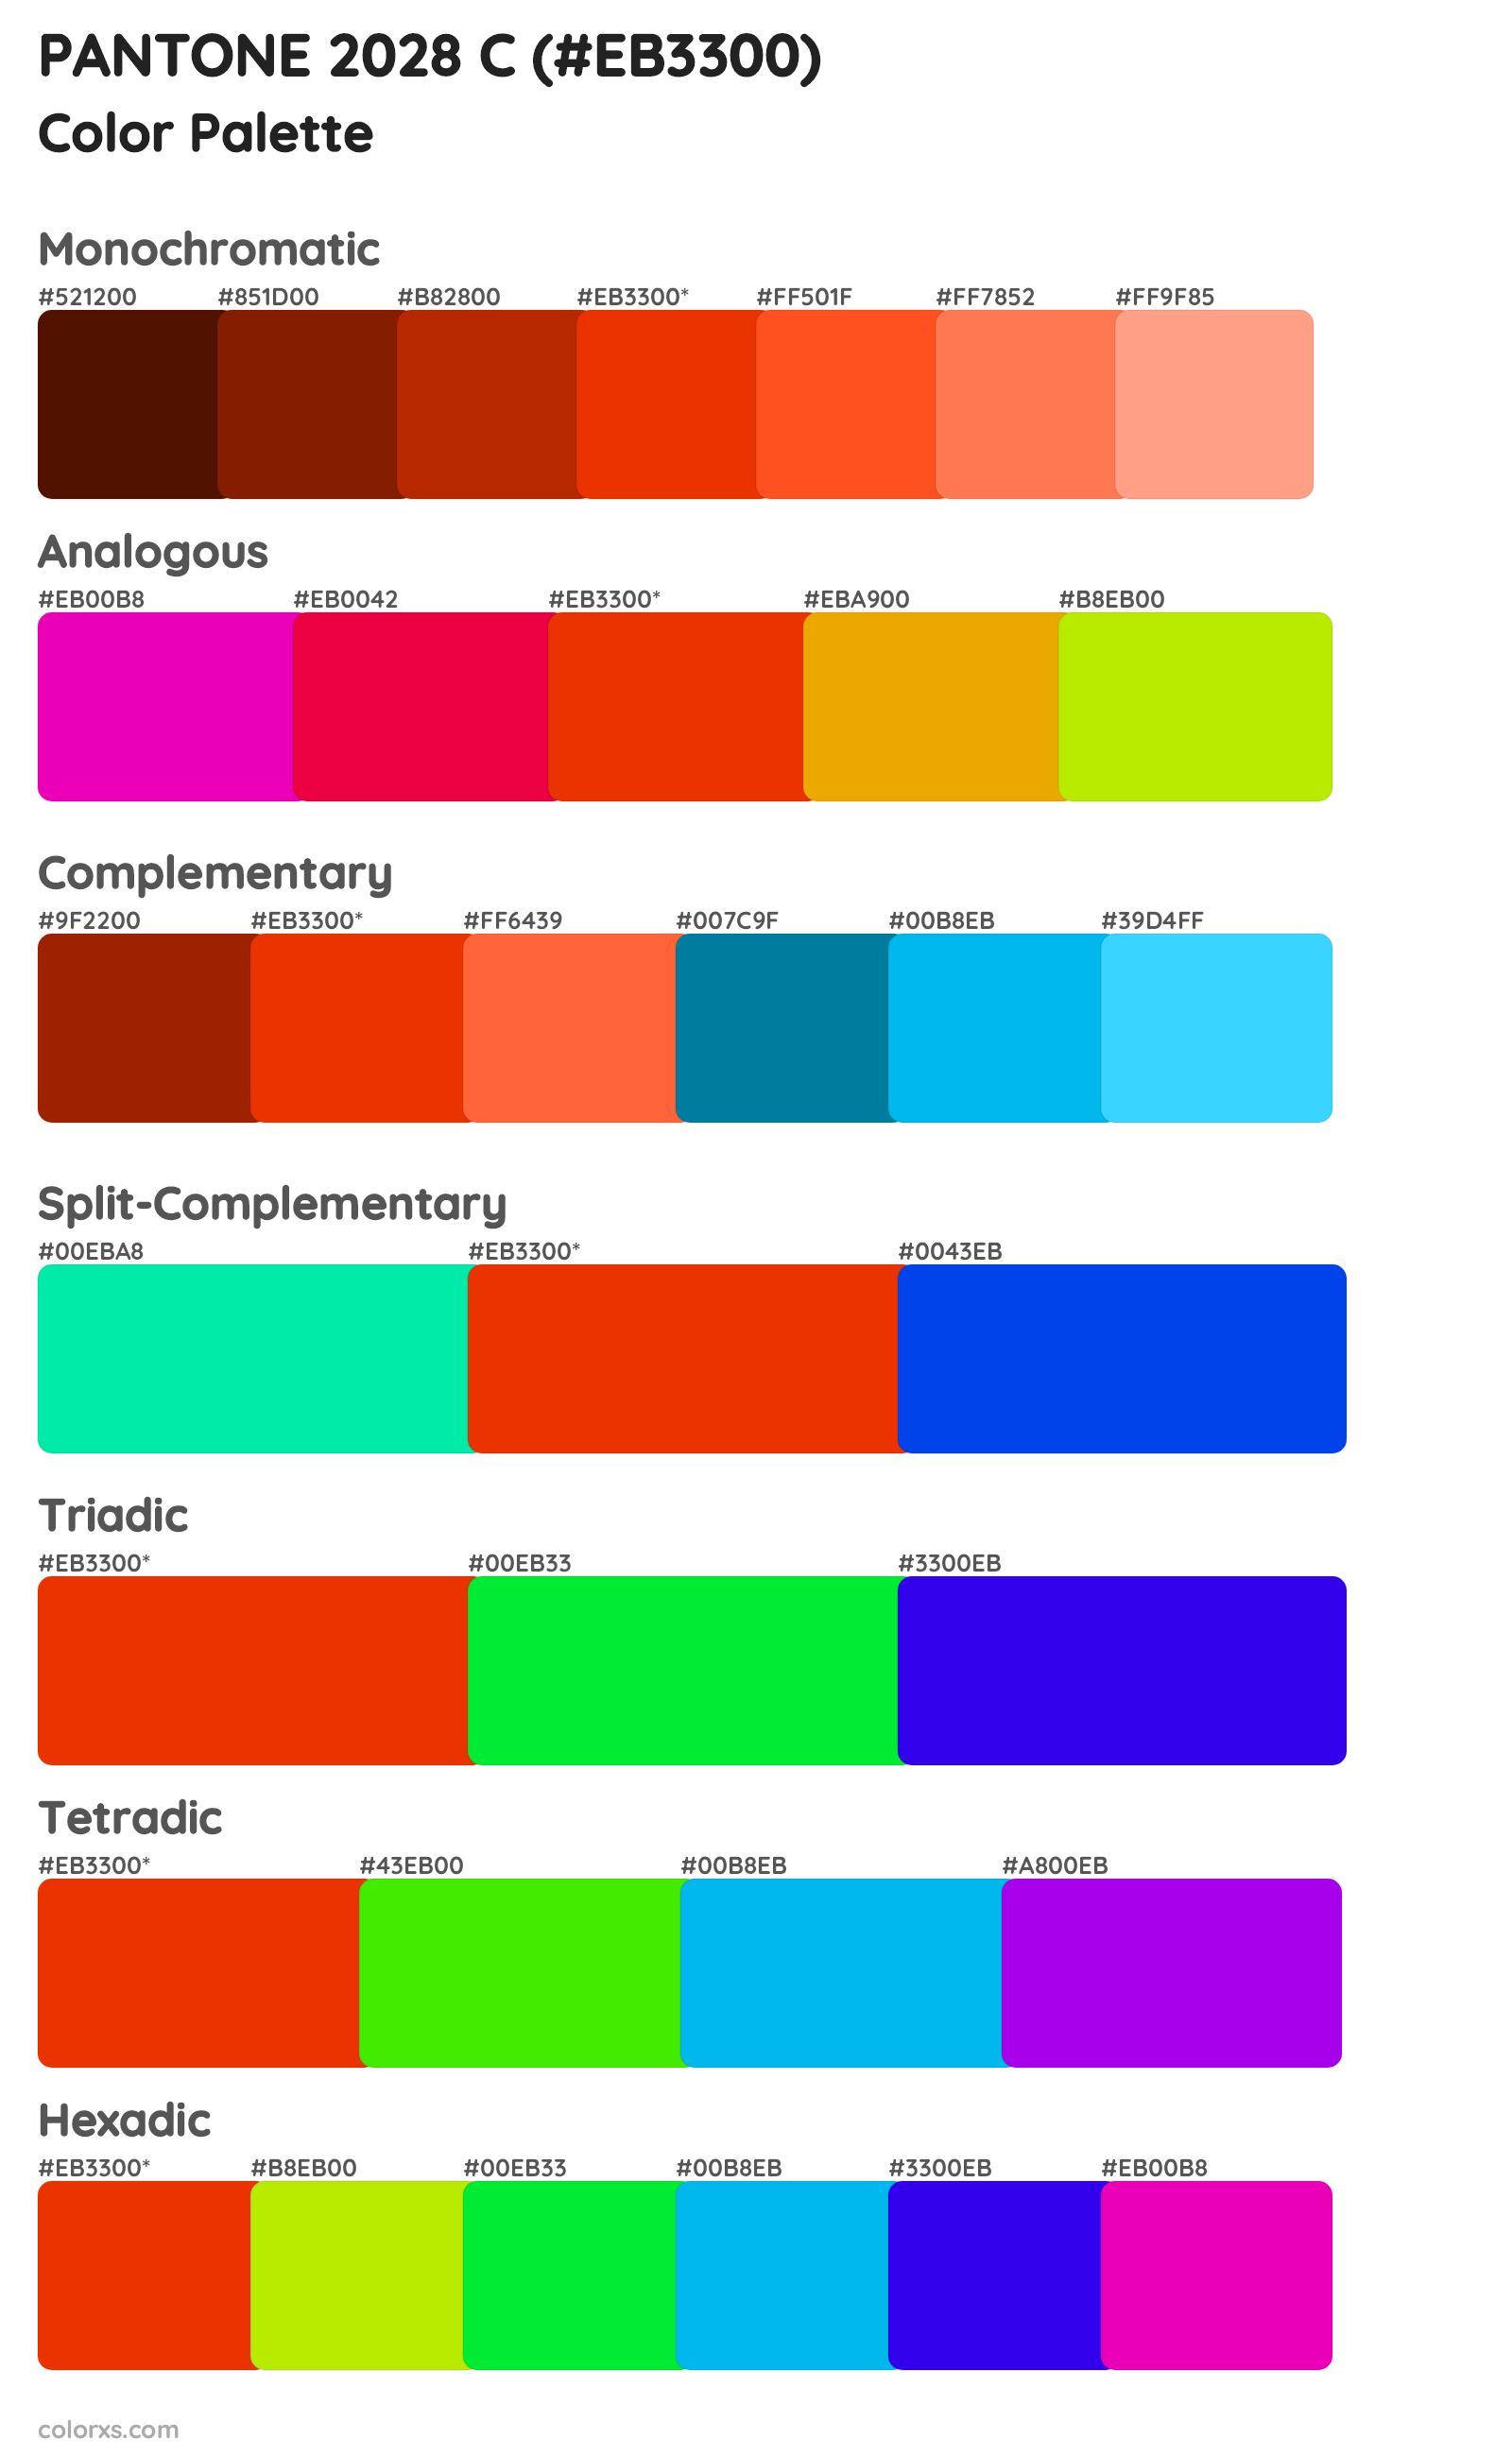 PANTONE 2028 C Color Scheme Palettes